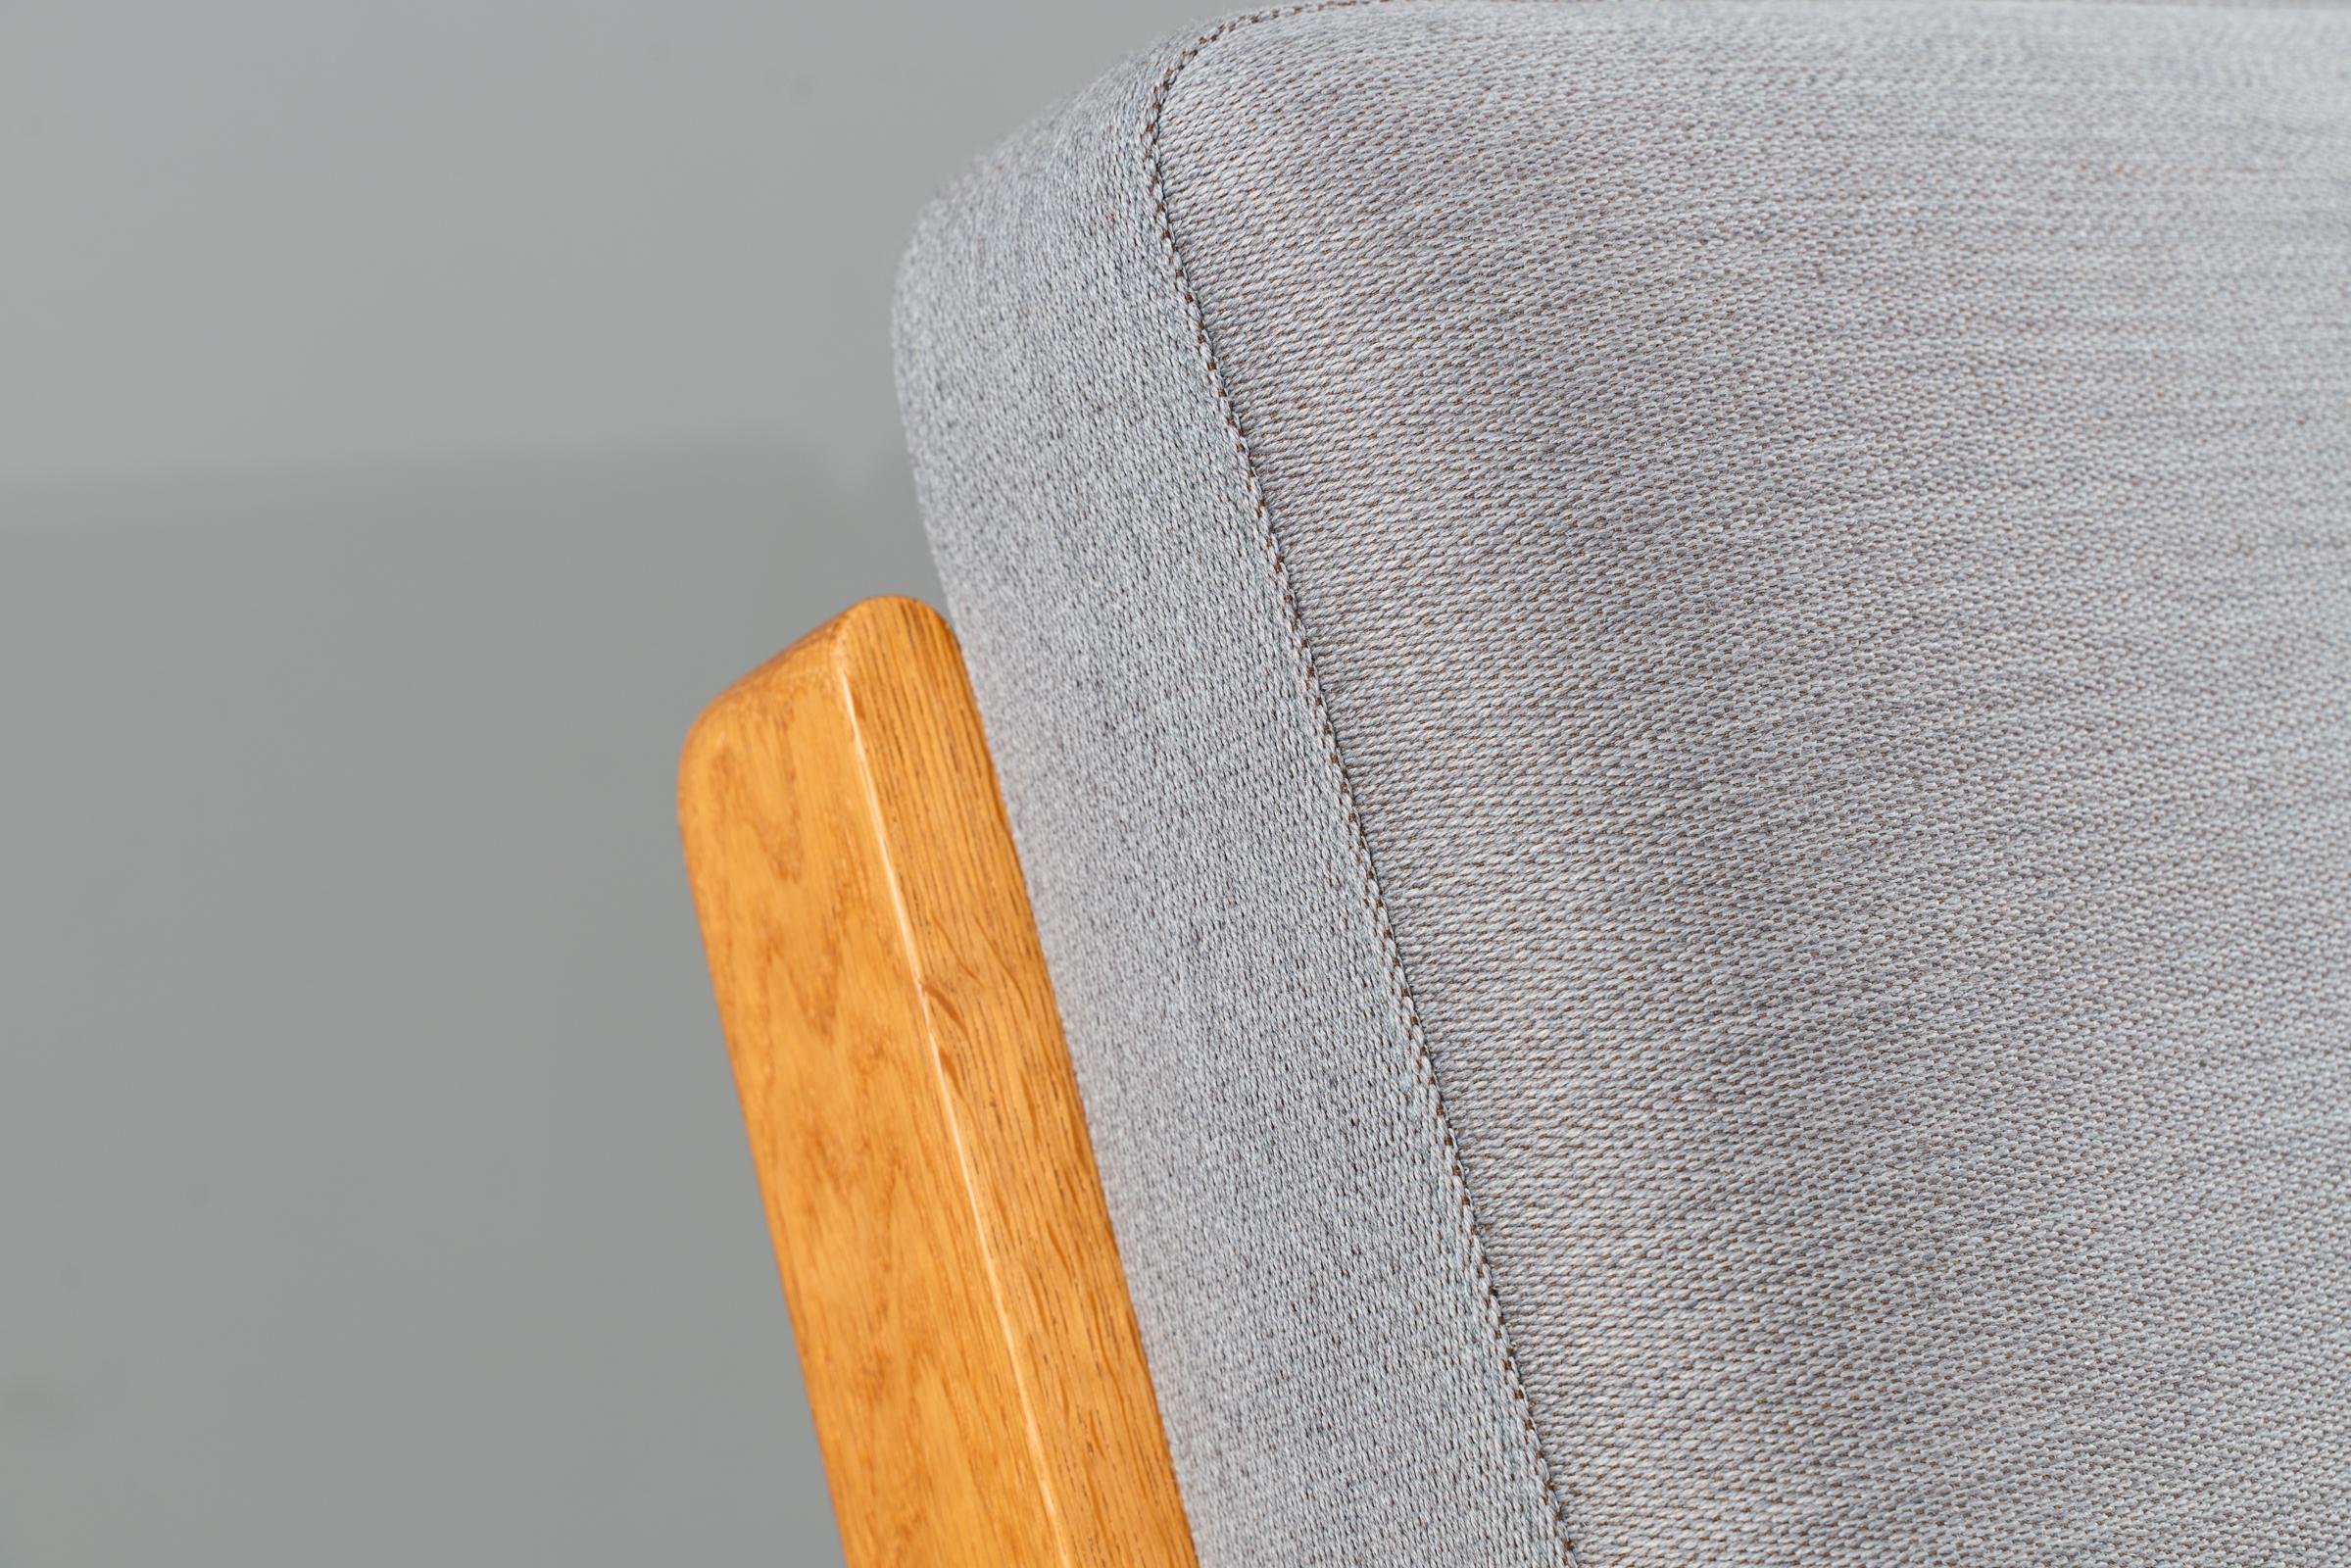 Das 1953 von Hans Wegner für Getama entworfene Sofa GE 290 ist eines der zeitlosen Stücke von Hans Wegner. Das Gestell aus massiver Eiche hat schräge, diagonale Beine. Die Armlehnen sind flach und breit, was diesem Sofa seinen Spitznamen einbrachte: